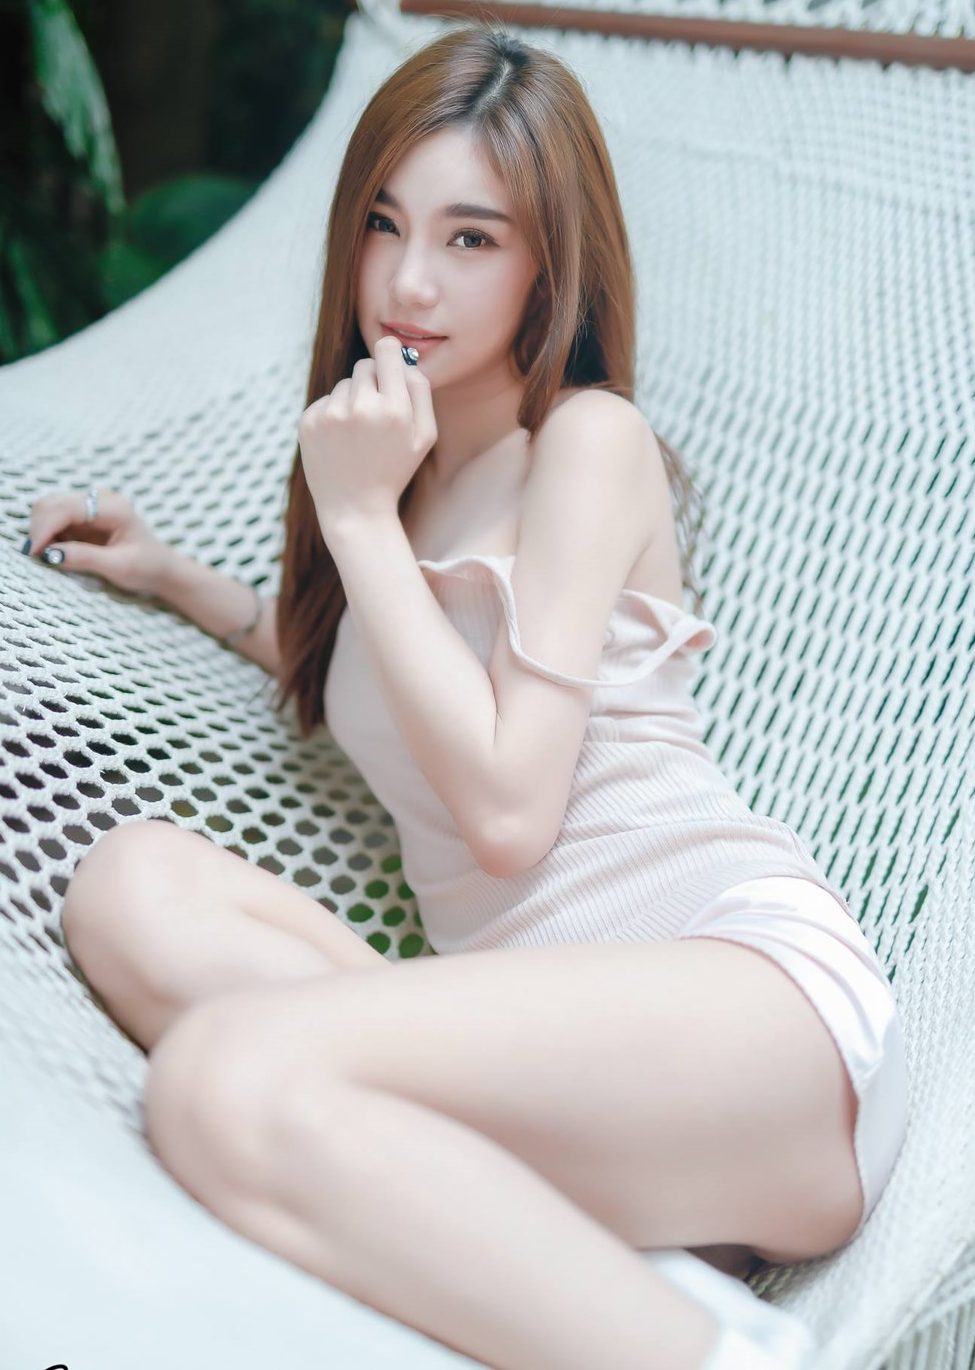 Jarunan Tavepanya hot thai girl sexy and cute baby girl